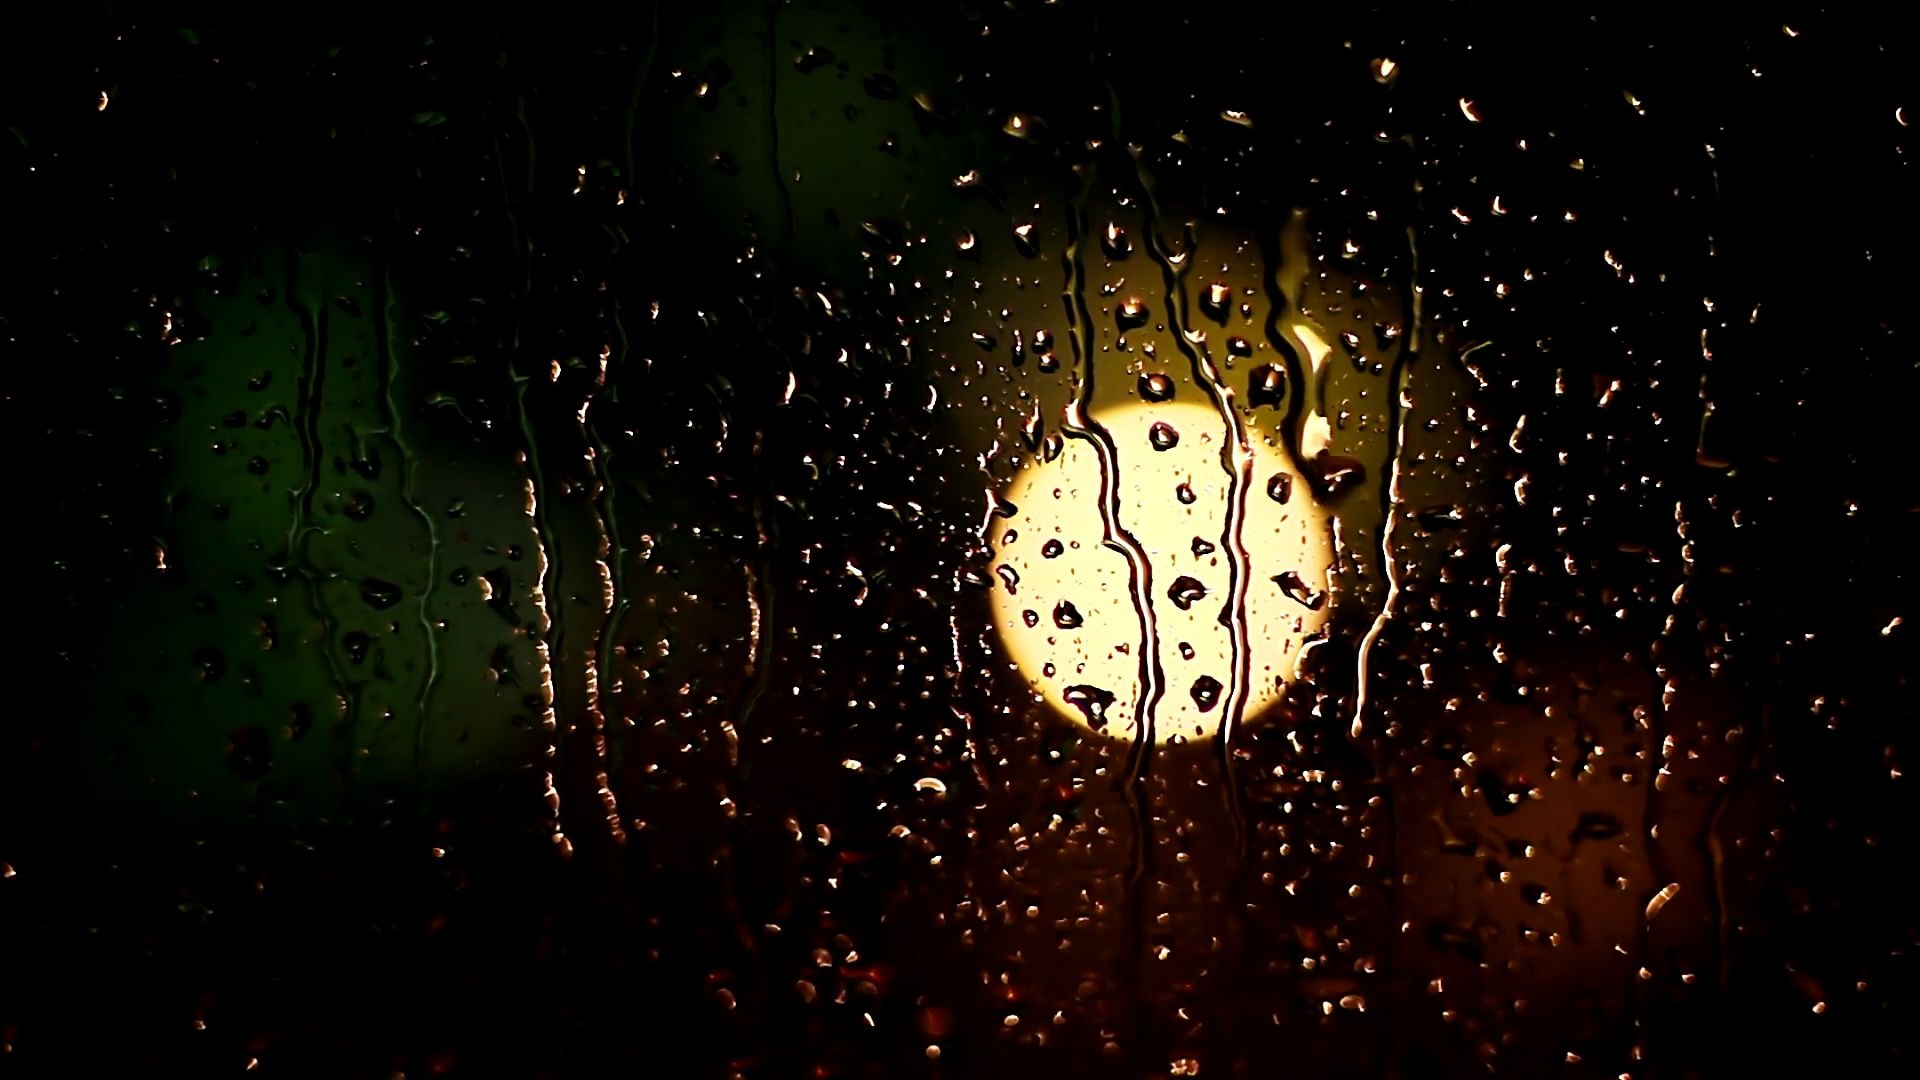 夜晚窗外下雨图片真实图片